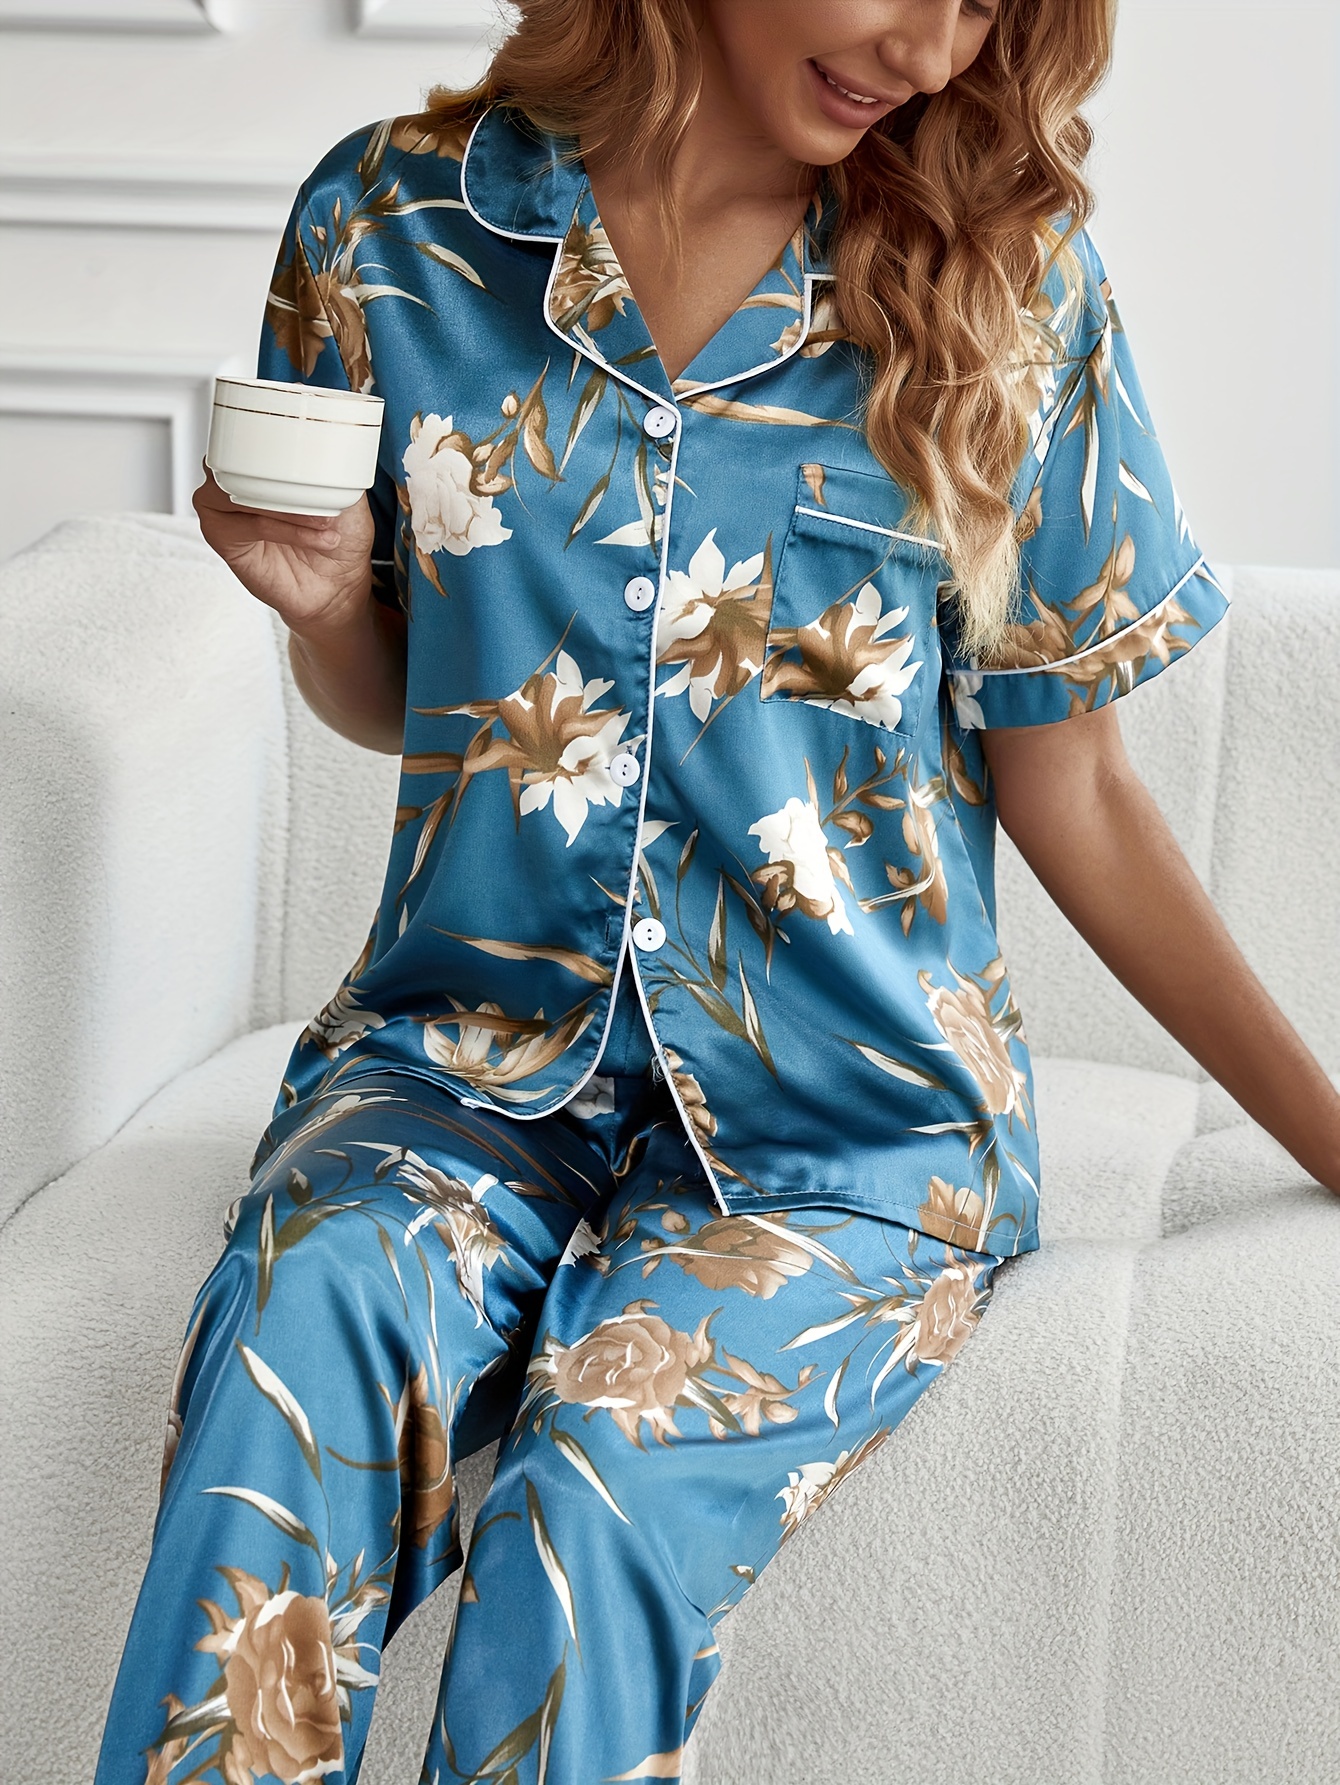 Conjunto de pijama feminino – roupa de dormir de cetim para dormir